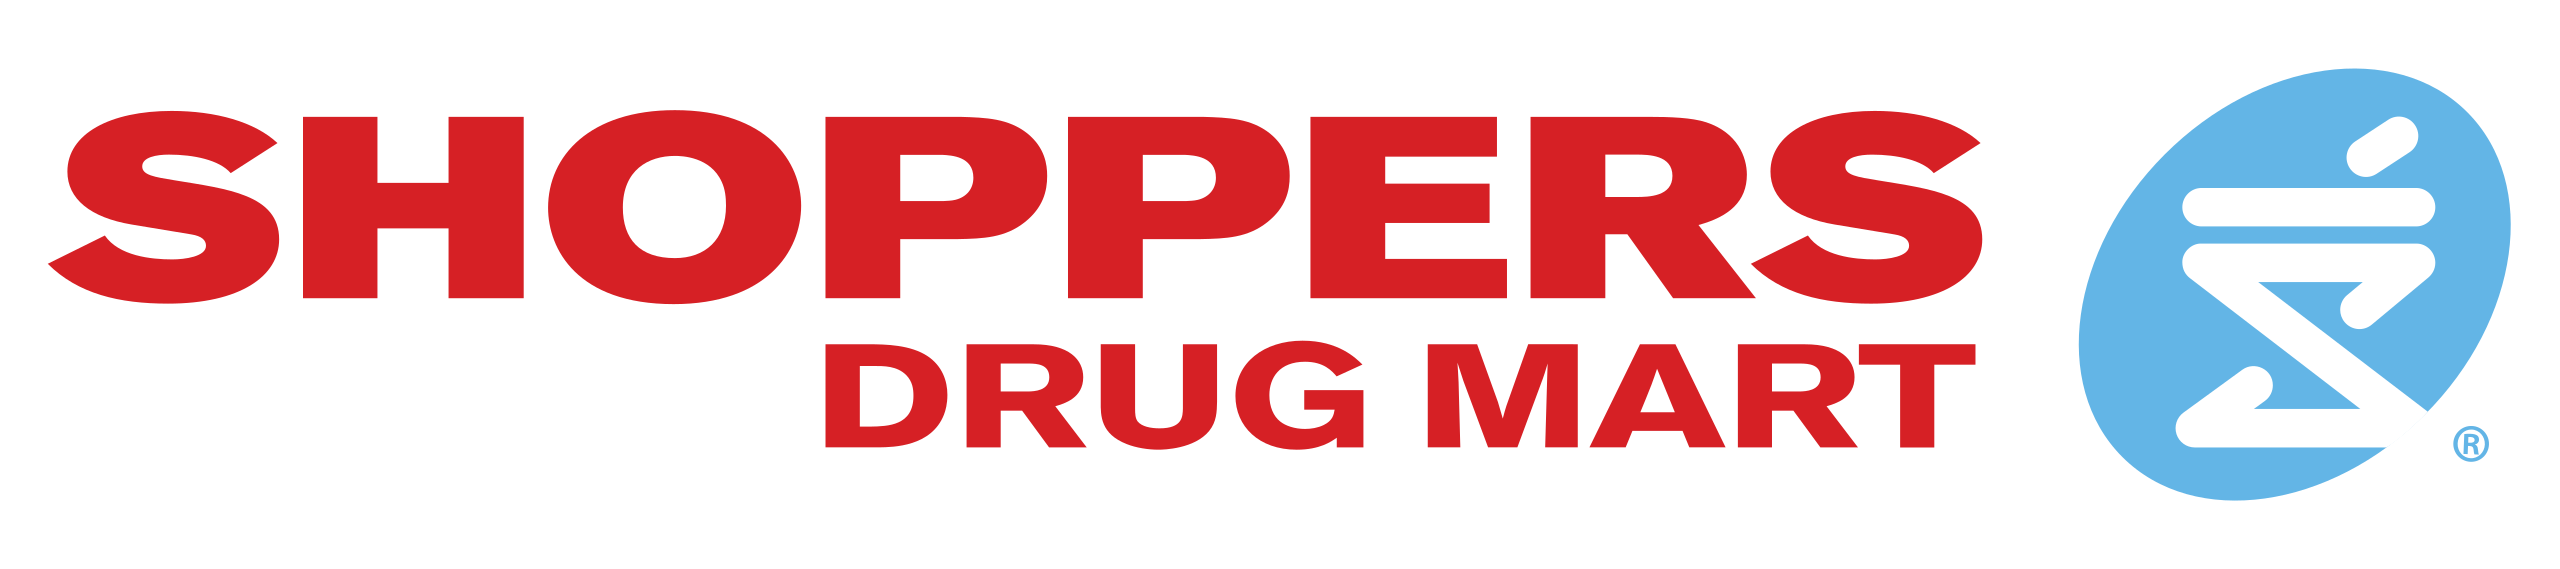 Shoppers drug mart logo